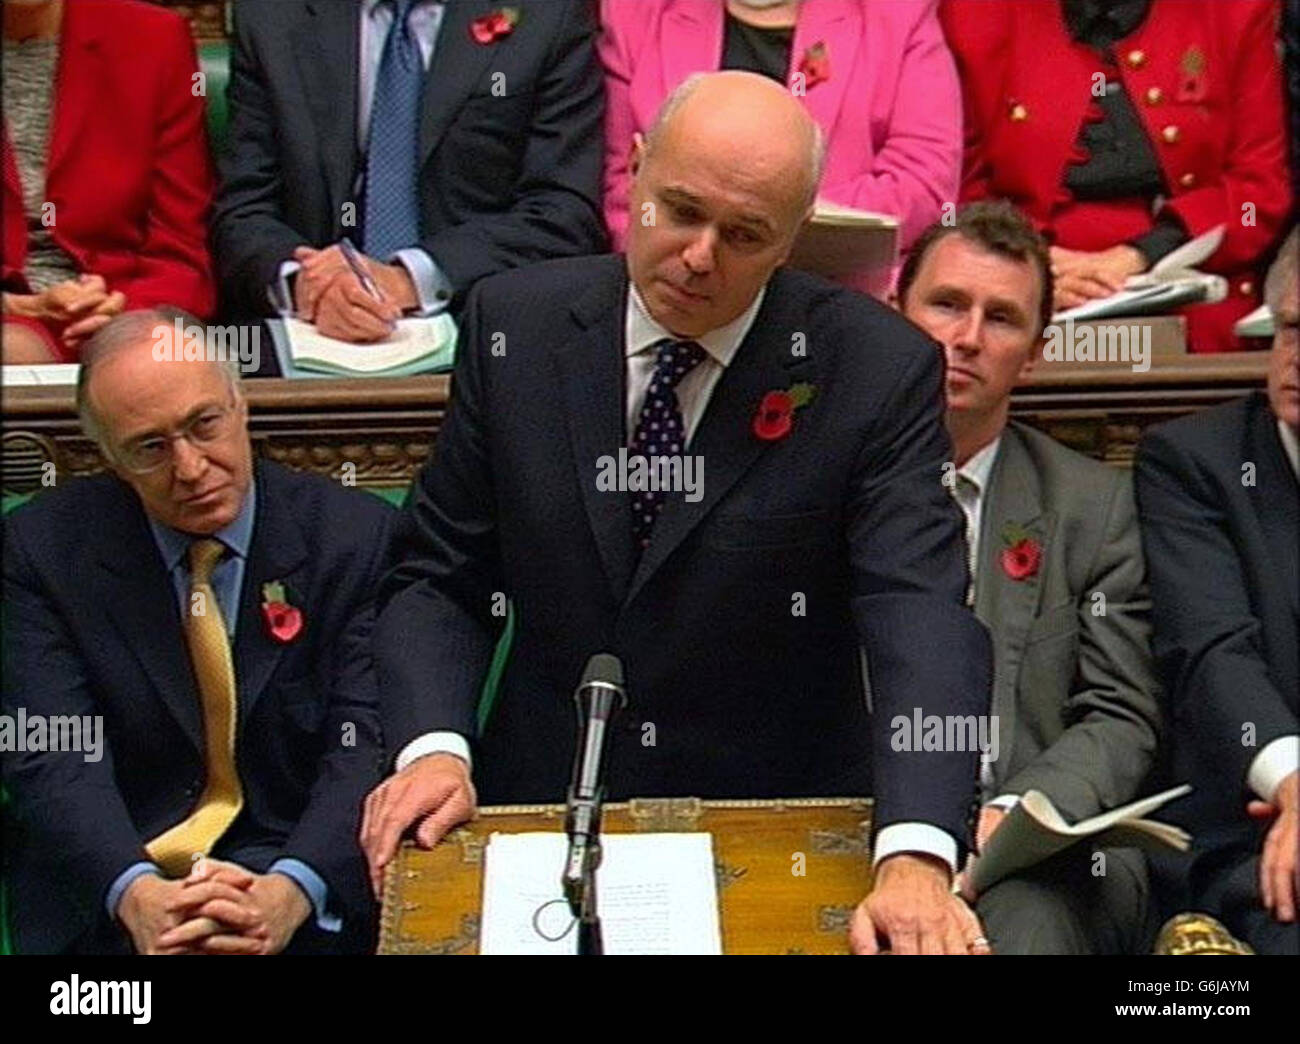 Le chef du parti conservateur Iain Duncan Smith pendant ce qui devrait être l'heure des questions de son dernier premier ministre à la Chambre des communes, à Londres. Banque D'Images